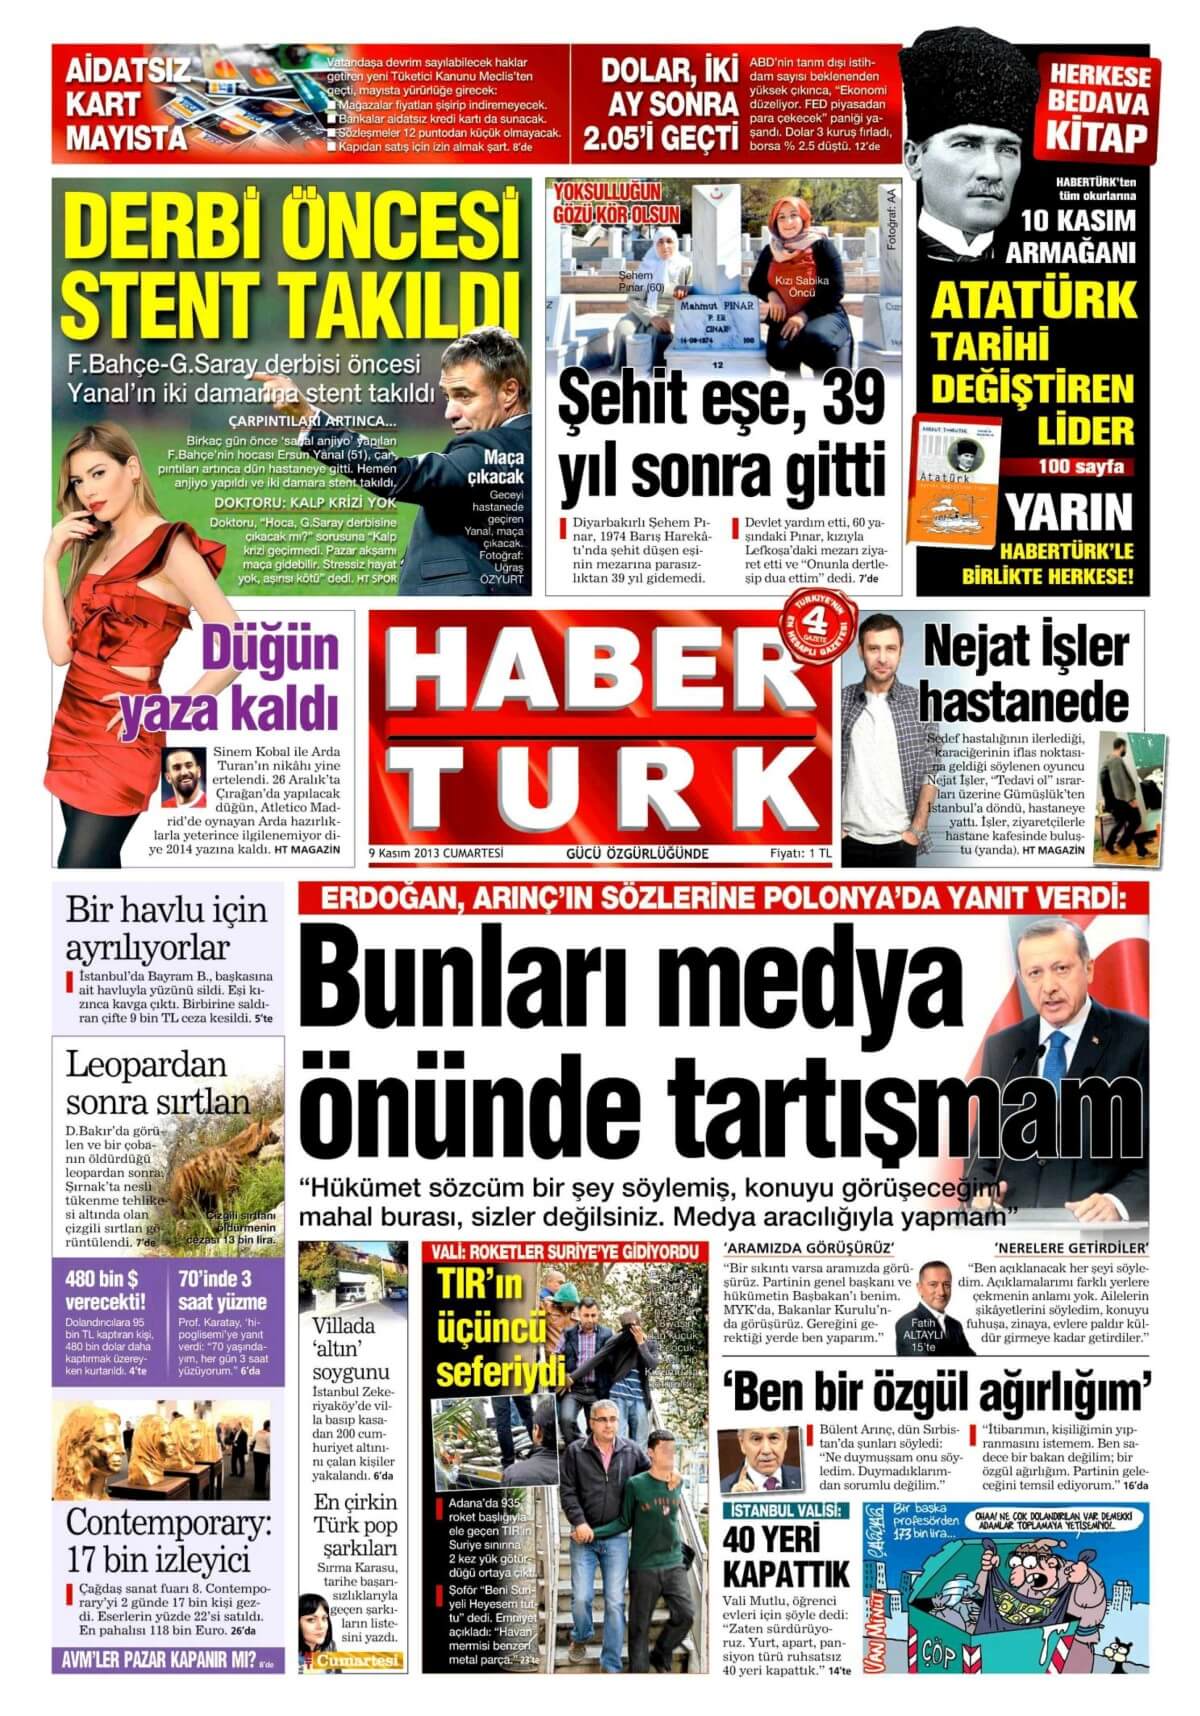 Turkish Newspapers 7 Haberturk